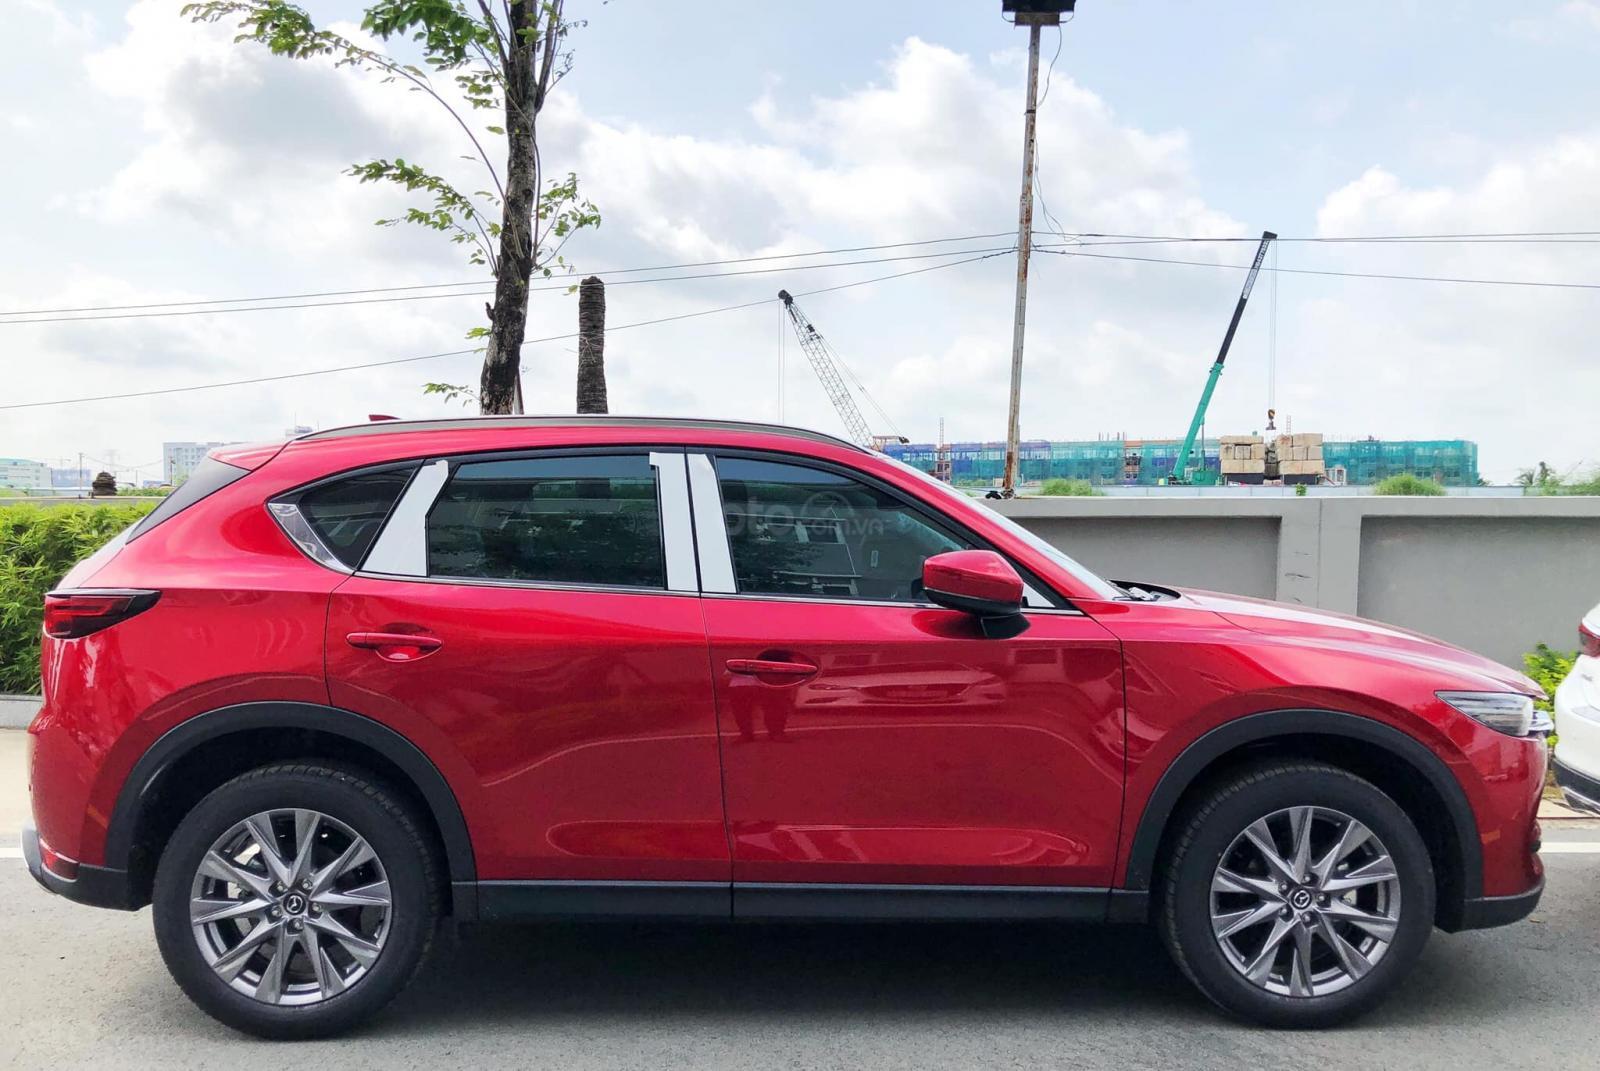 Mua Bán Xe Mazda CX 5 2018 Màu Đỏ Cũ Giá Rẻ Chính Chủ